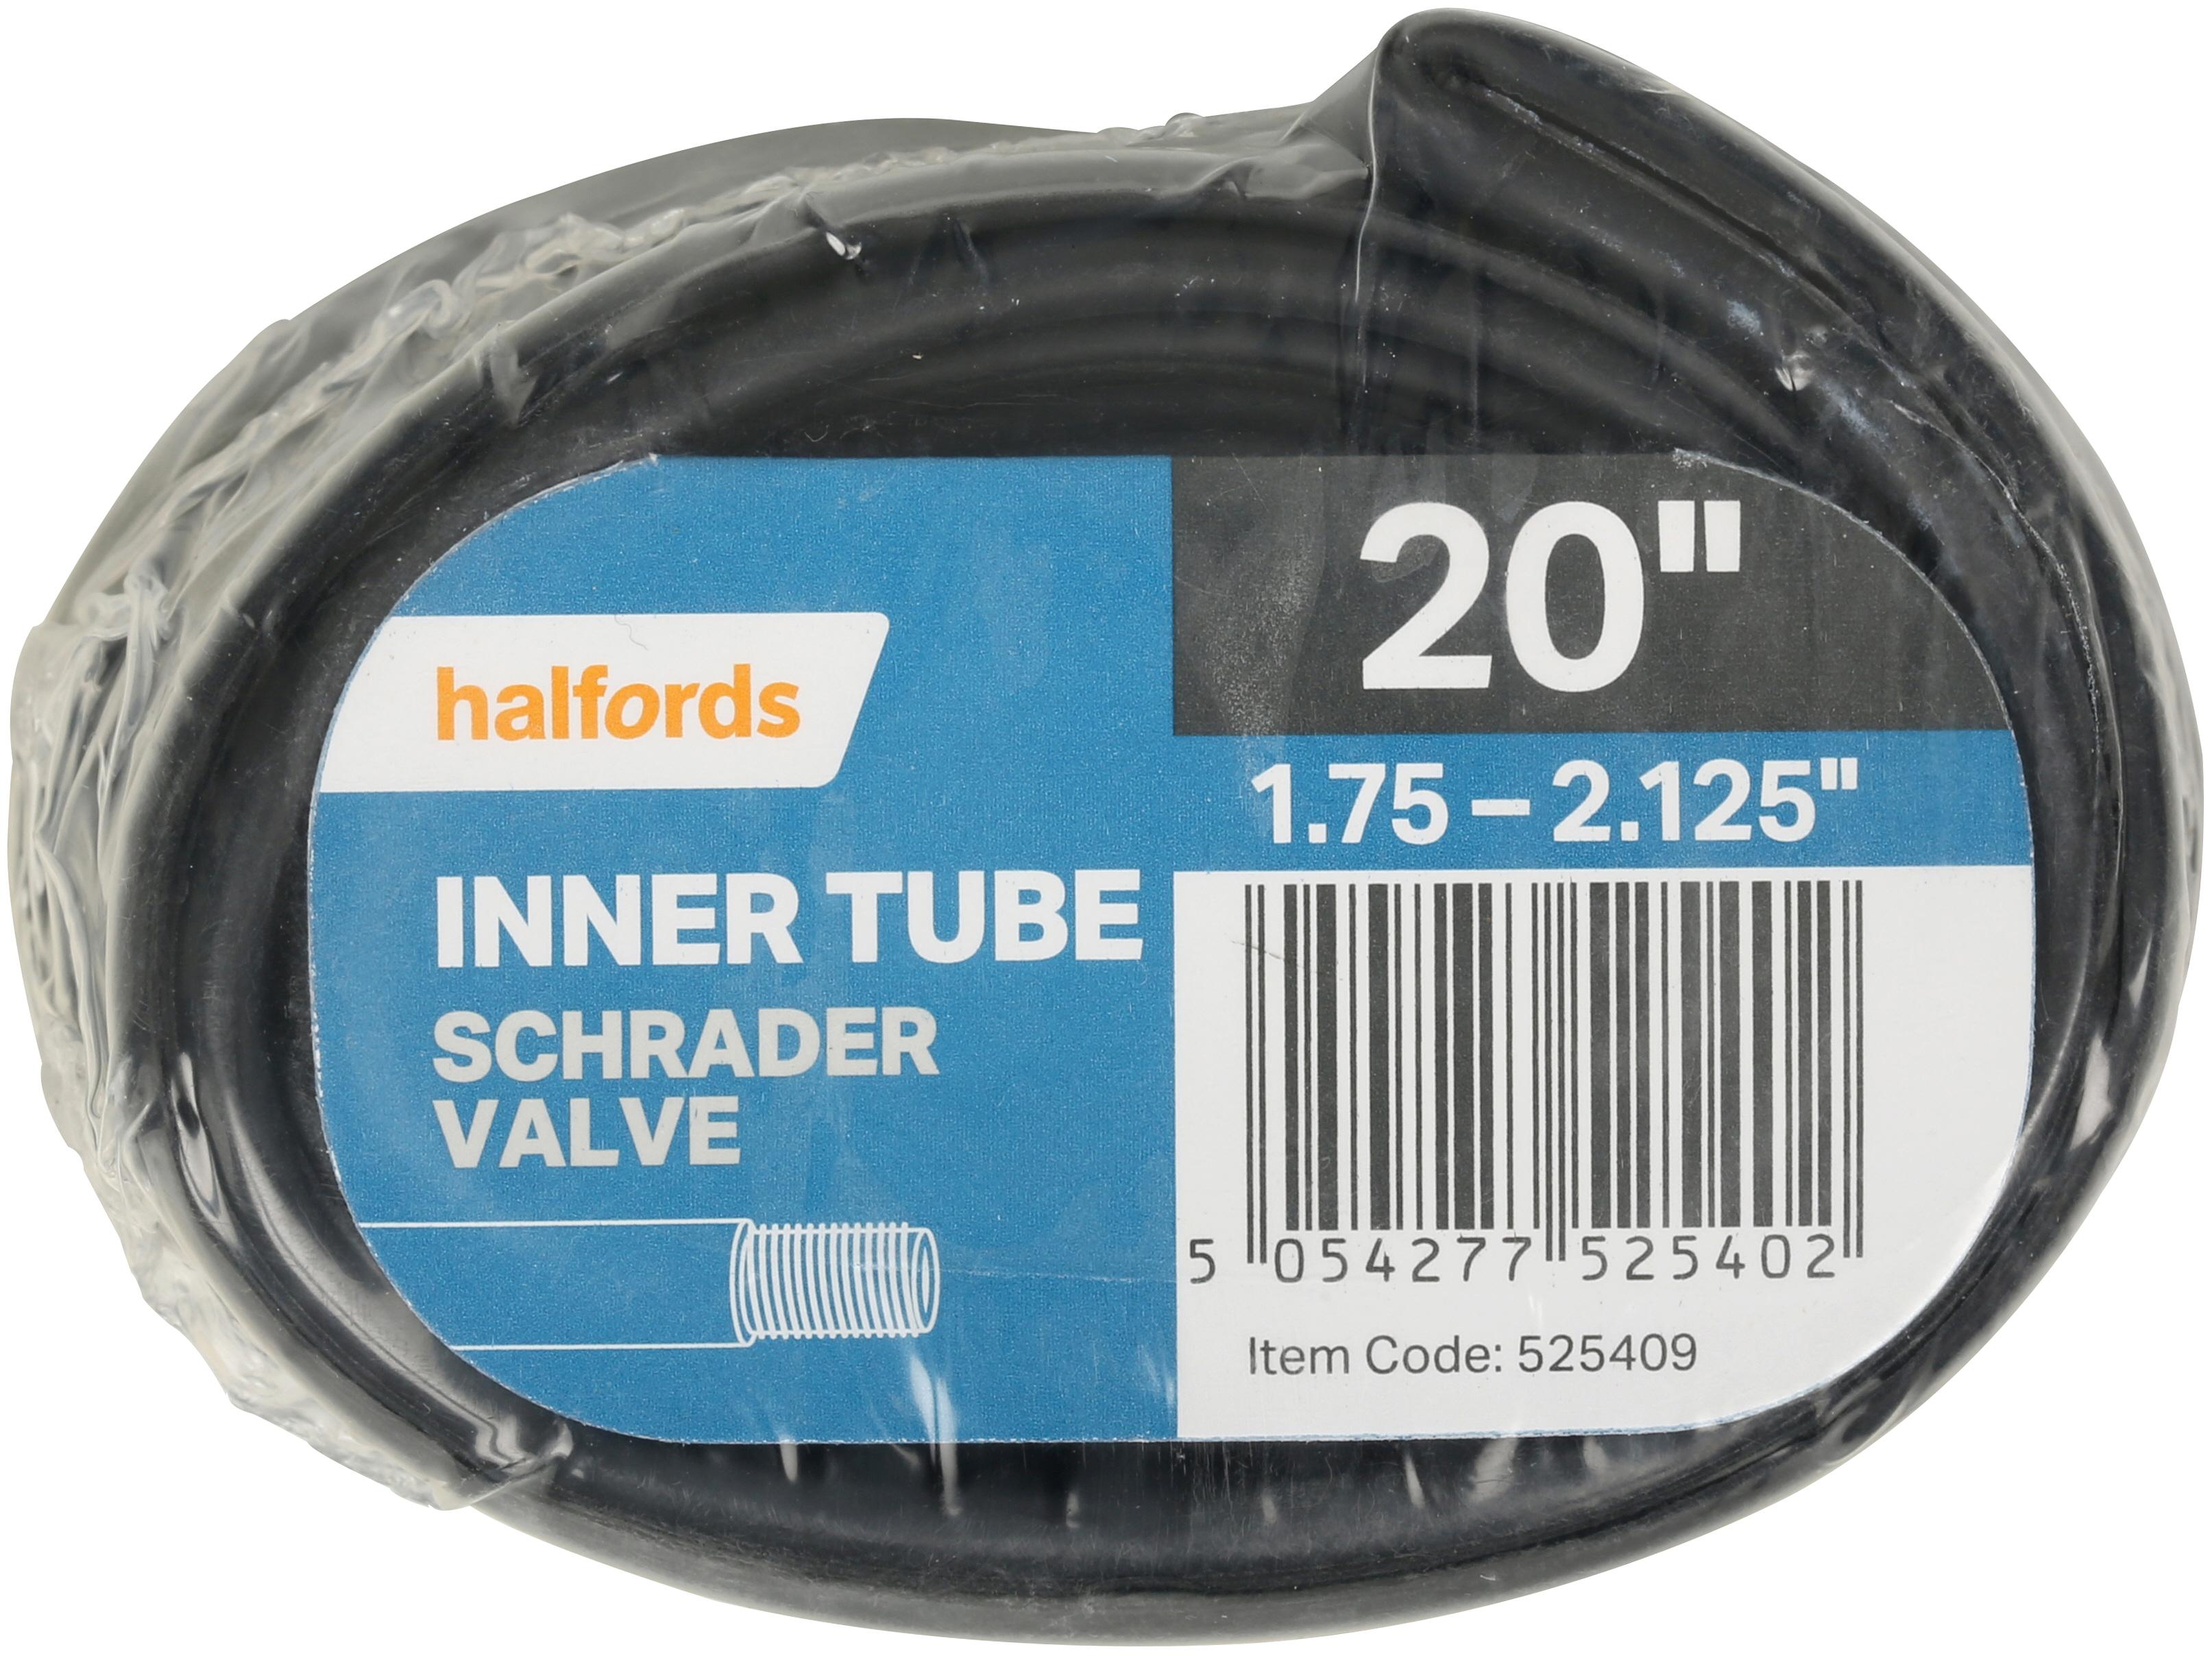 halfords inner tubes 700c